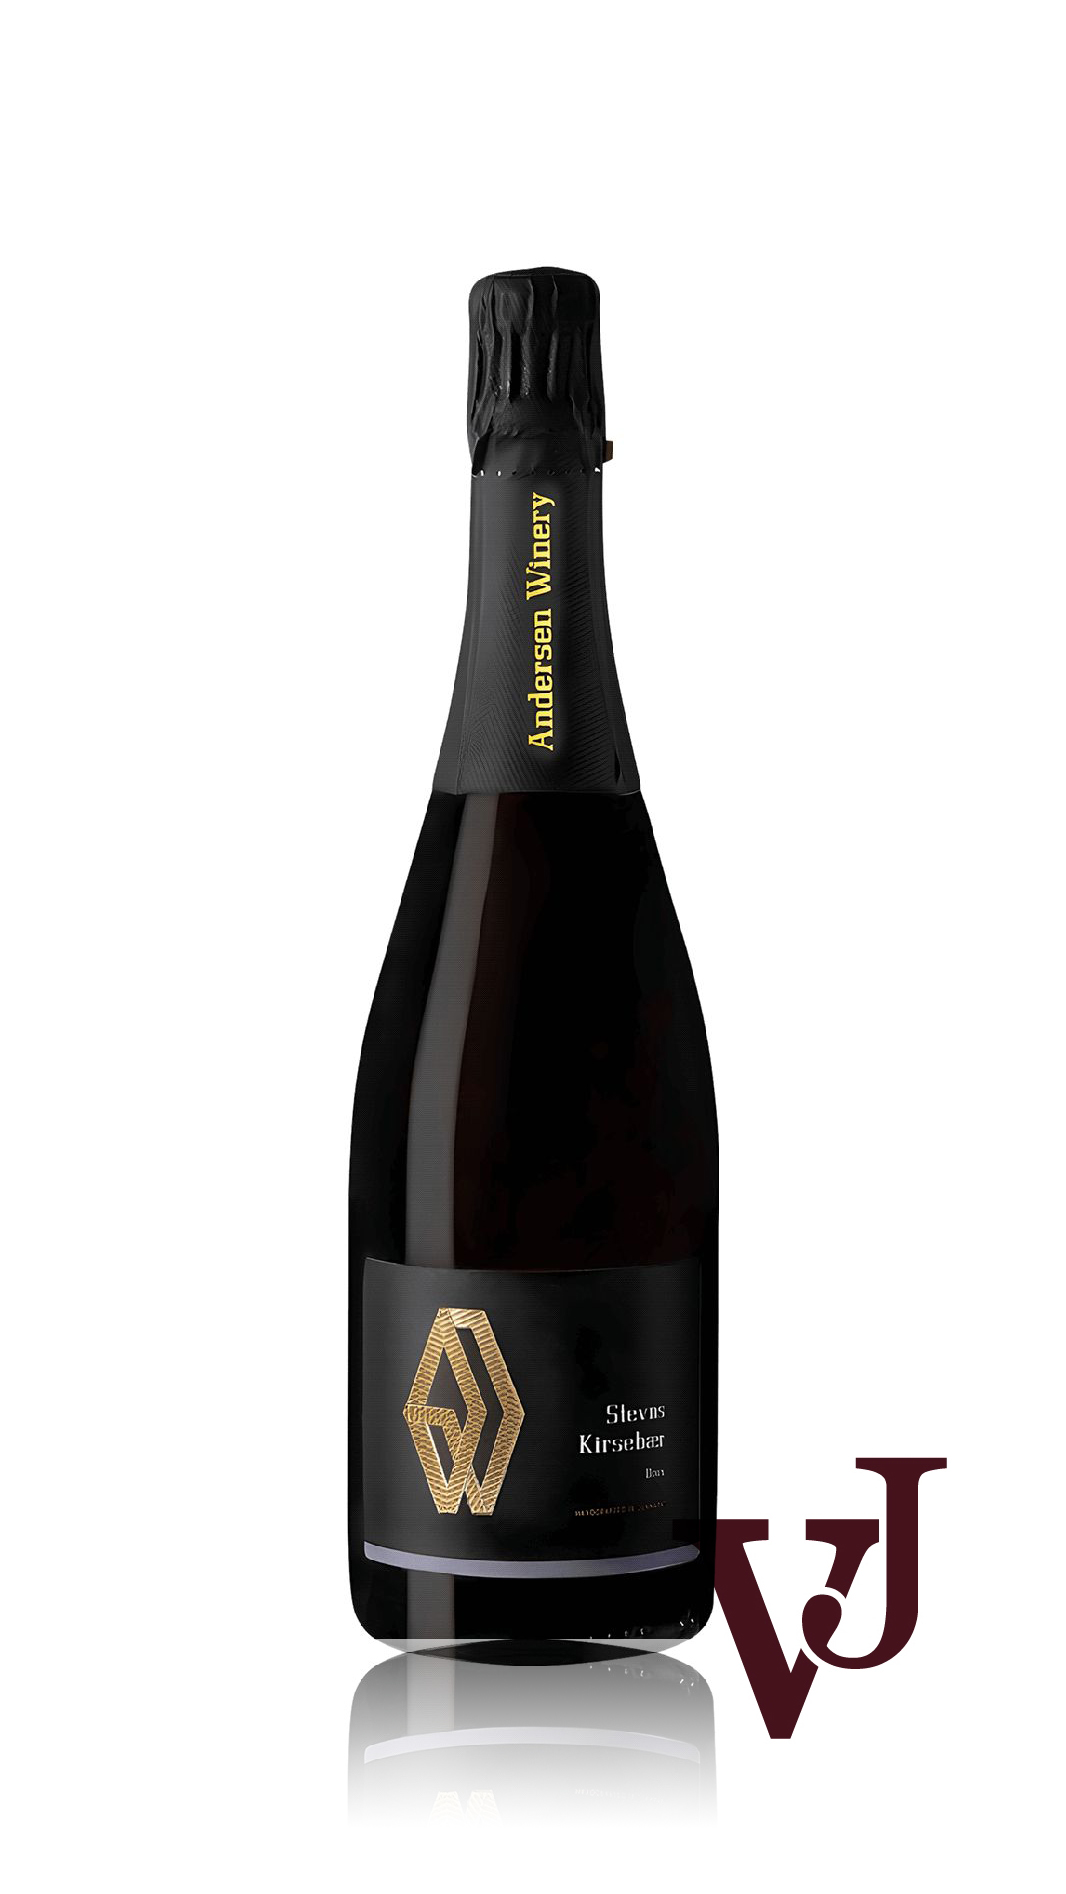 Mousserande Vin - Stevns Mousserande Körsbärsvin 2021 artikel nummer 7325501 från producenten Andersen Winery från Danmark.